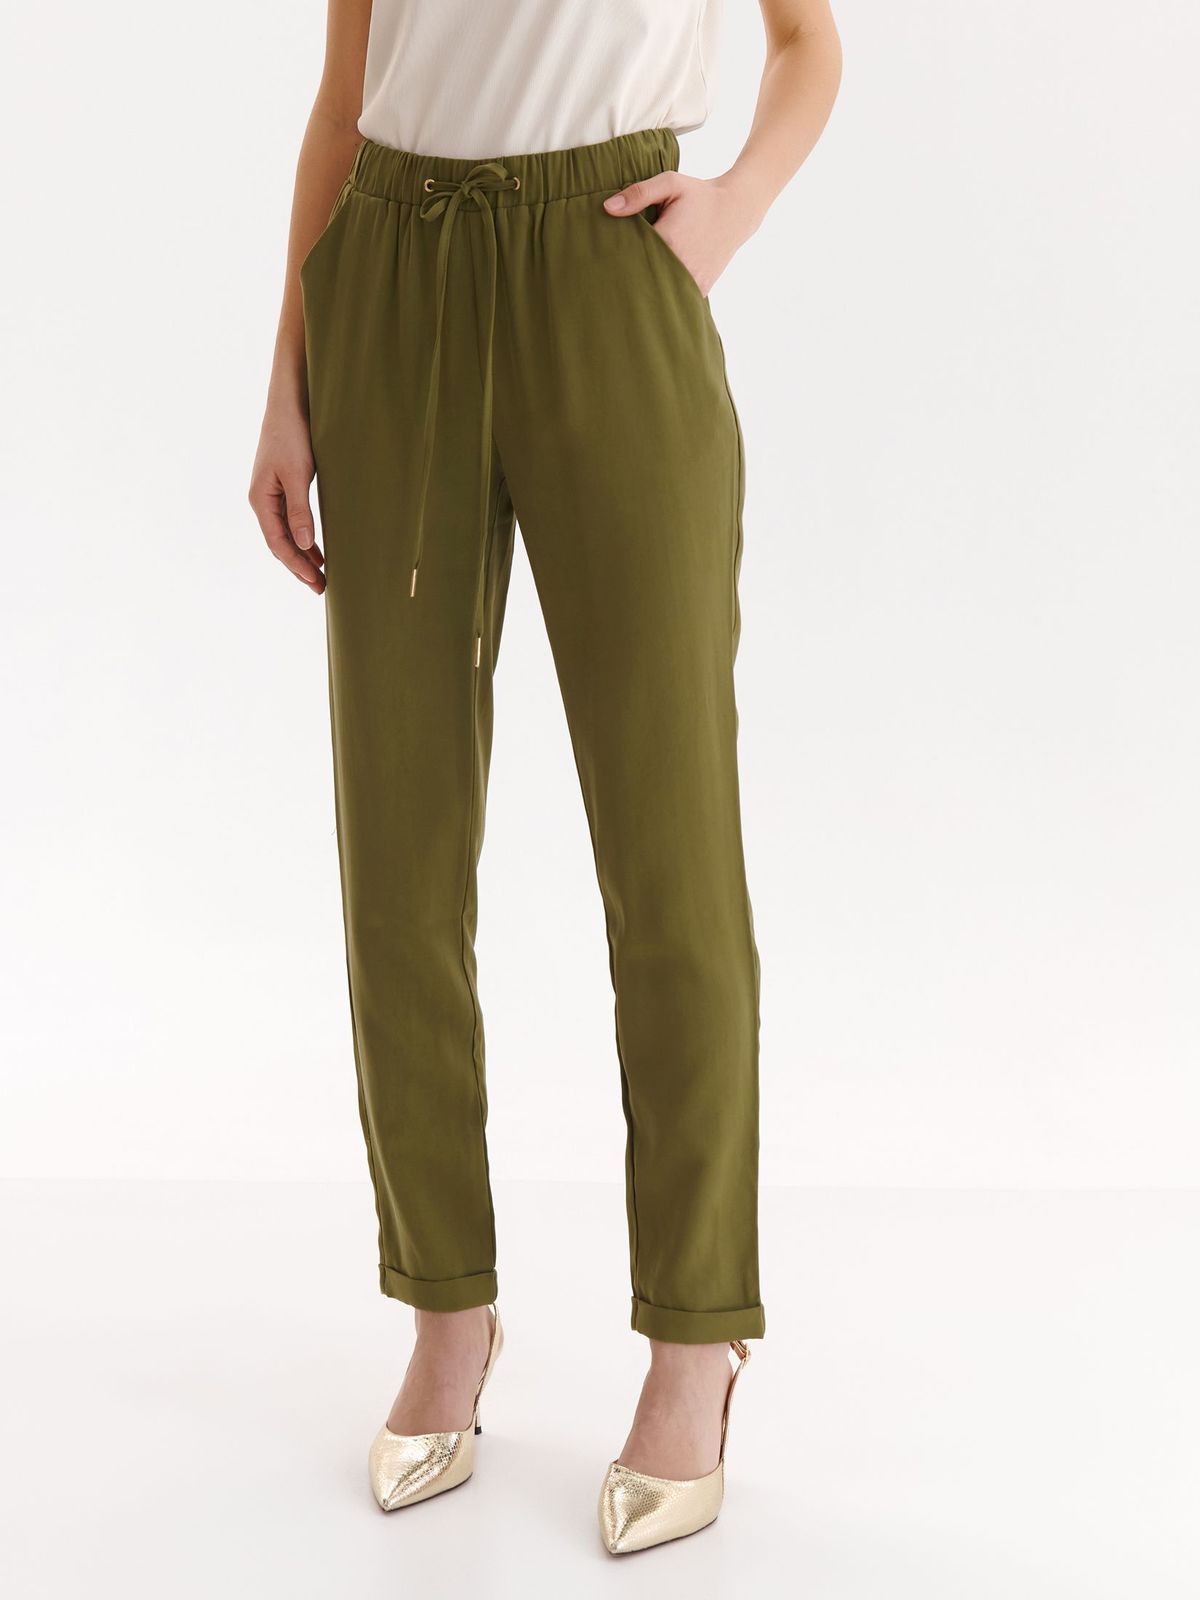 Pantaloni din material subtire verde conici cu elastic in talie si buzunare laterale - Top Secret